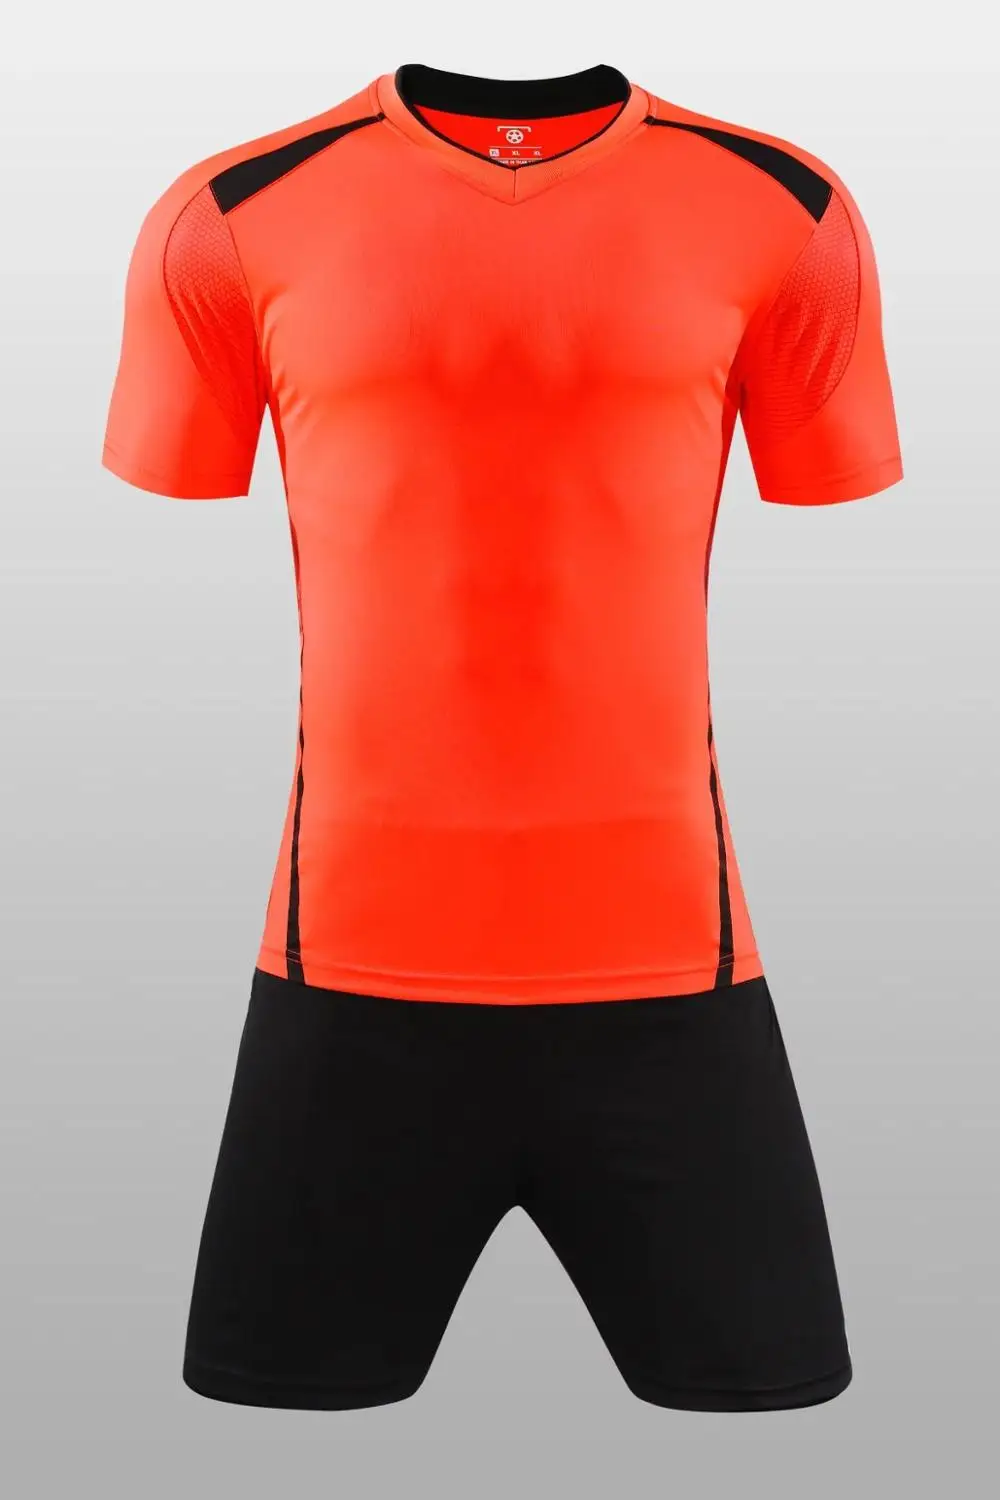 Настольный теннис Майки, Мужская быстрая сушка Training Майки, спортивной одежды для взрослых, дышащие спортивные рубашки, футбол одежда B3 - Цвет: Оранжевый